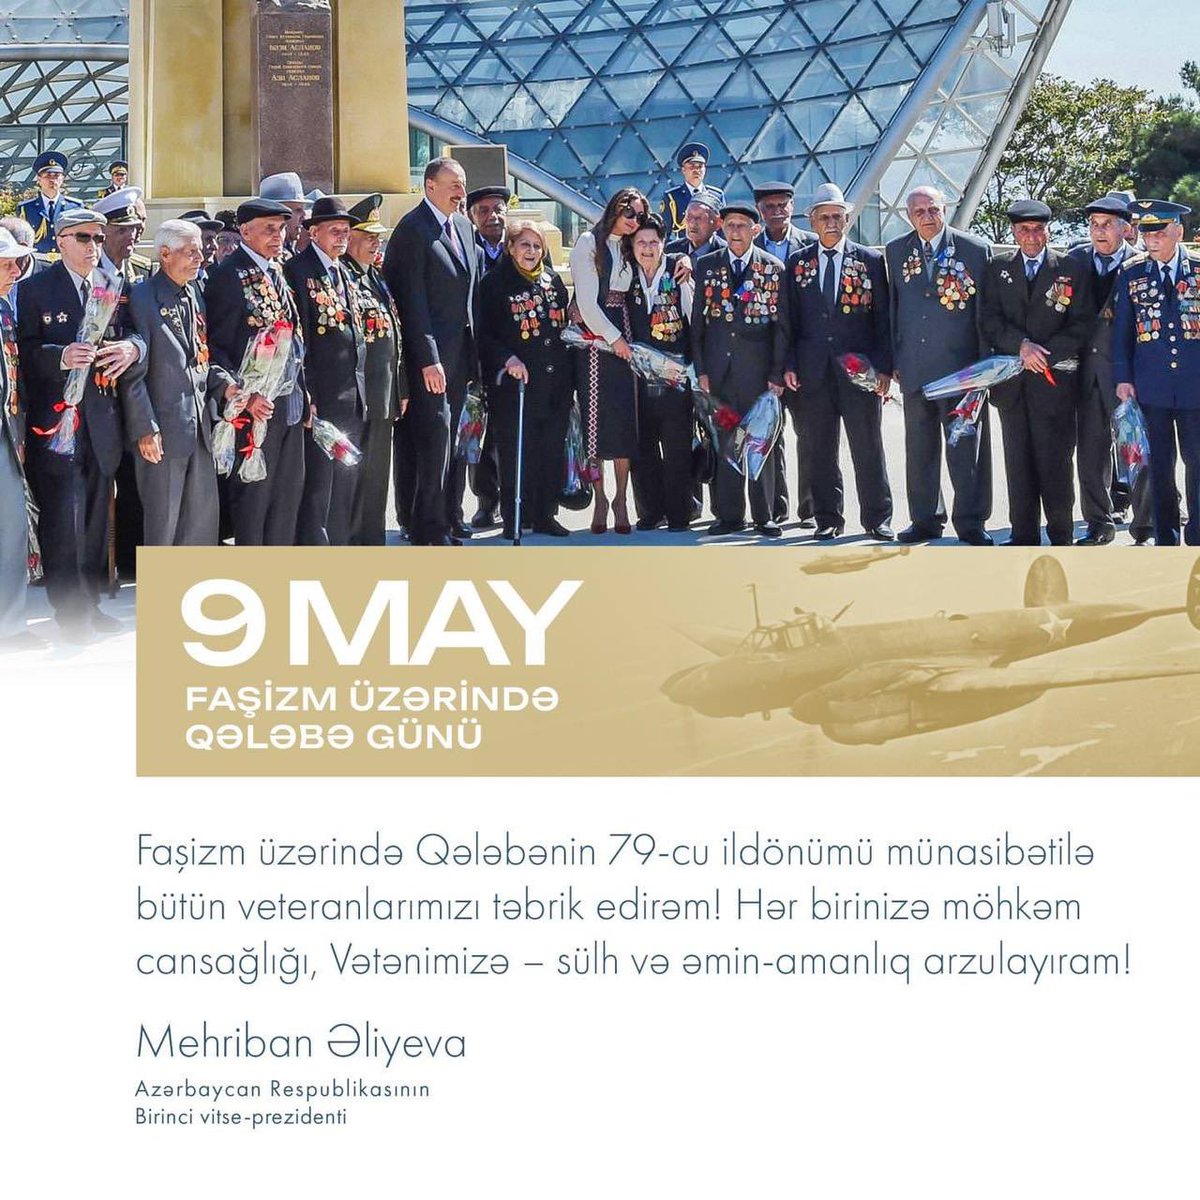 🇦🇿Первый вице-президент Мехрибан Алиева поделилась публикацией по случаю 9 мая - Дня Победы над фашизмом. 

Поздравляю всех ветеранов с 79-й годовщиной победы над фашизмом! Желаю каждому из вас крепкого здоровья, нашей Родине - мира и спокойствия!

#Azerbaijan #Caliber